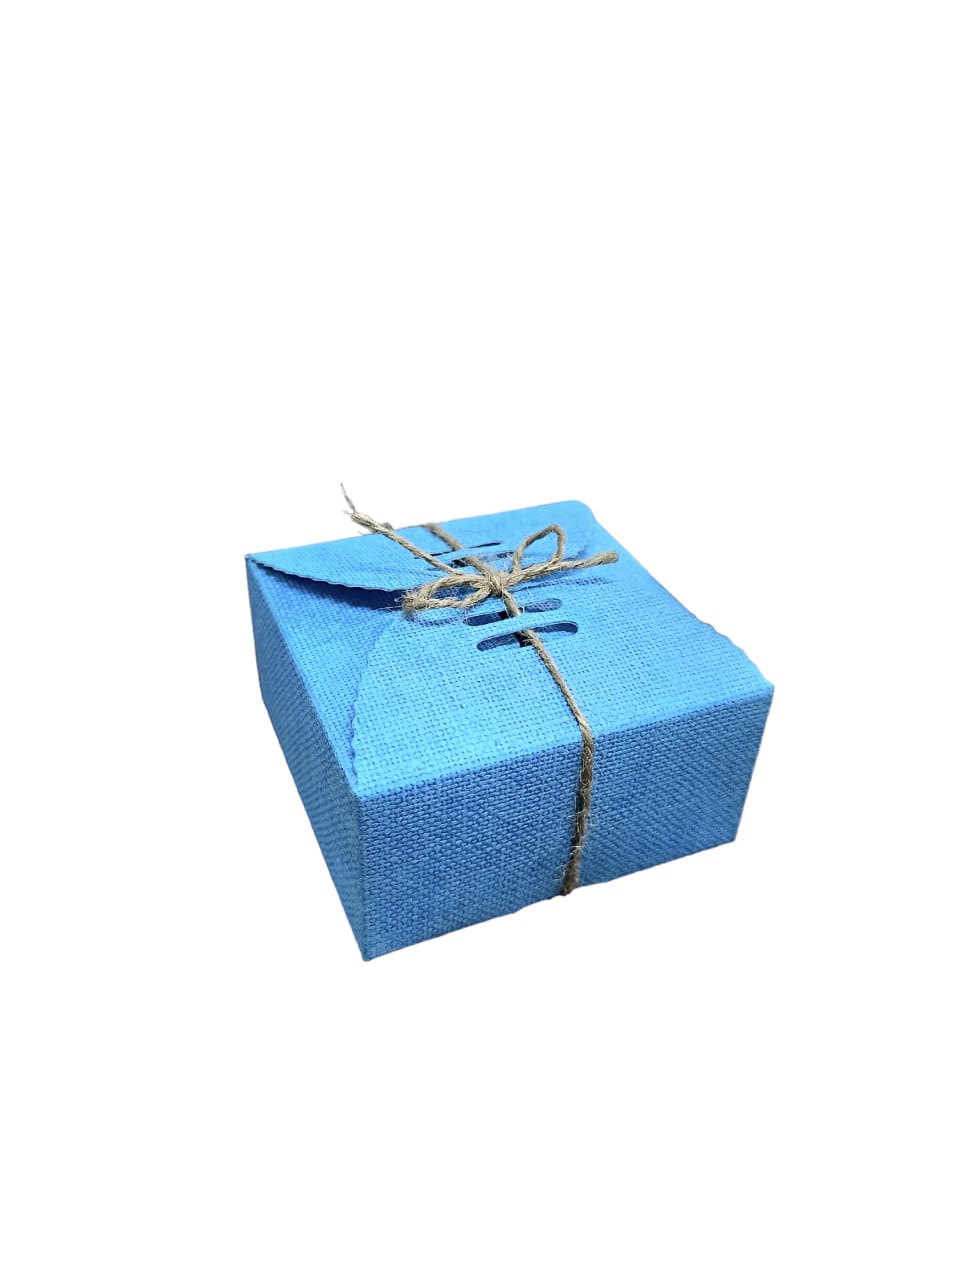 Mini gift box, chocolate box ( Contain 1 Unit )